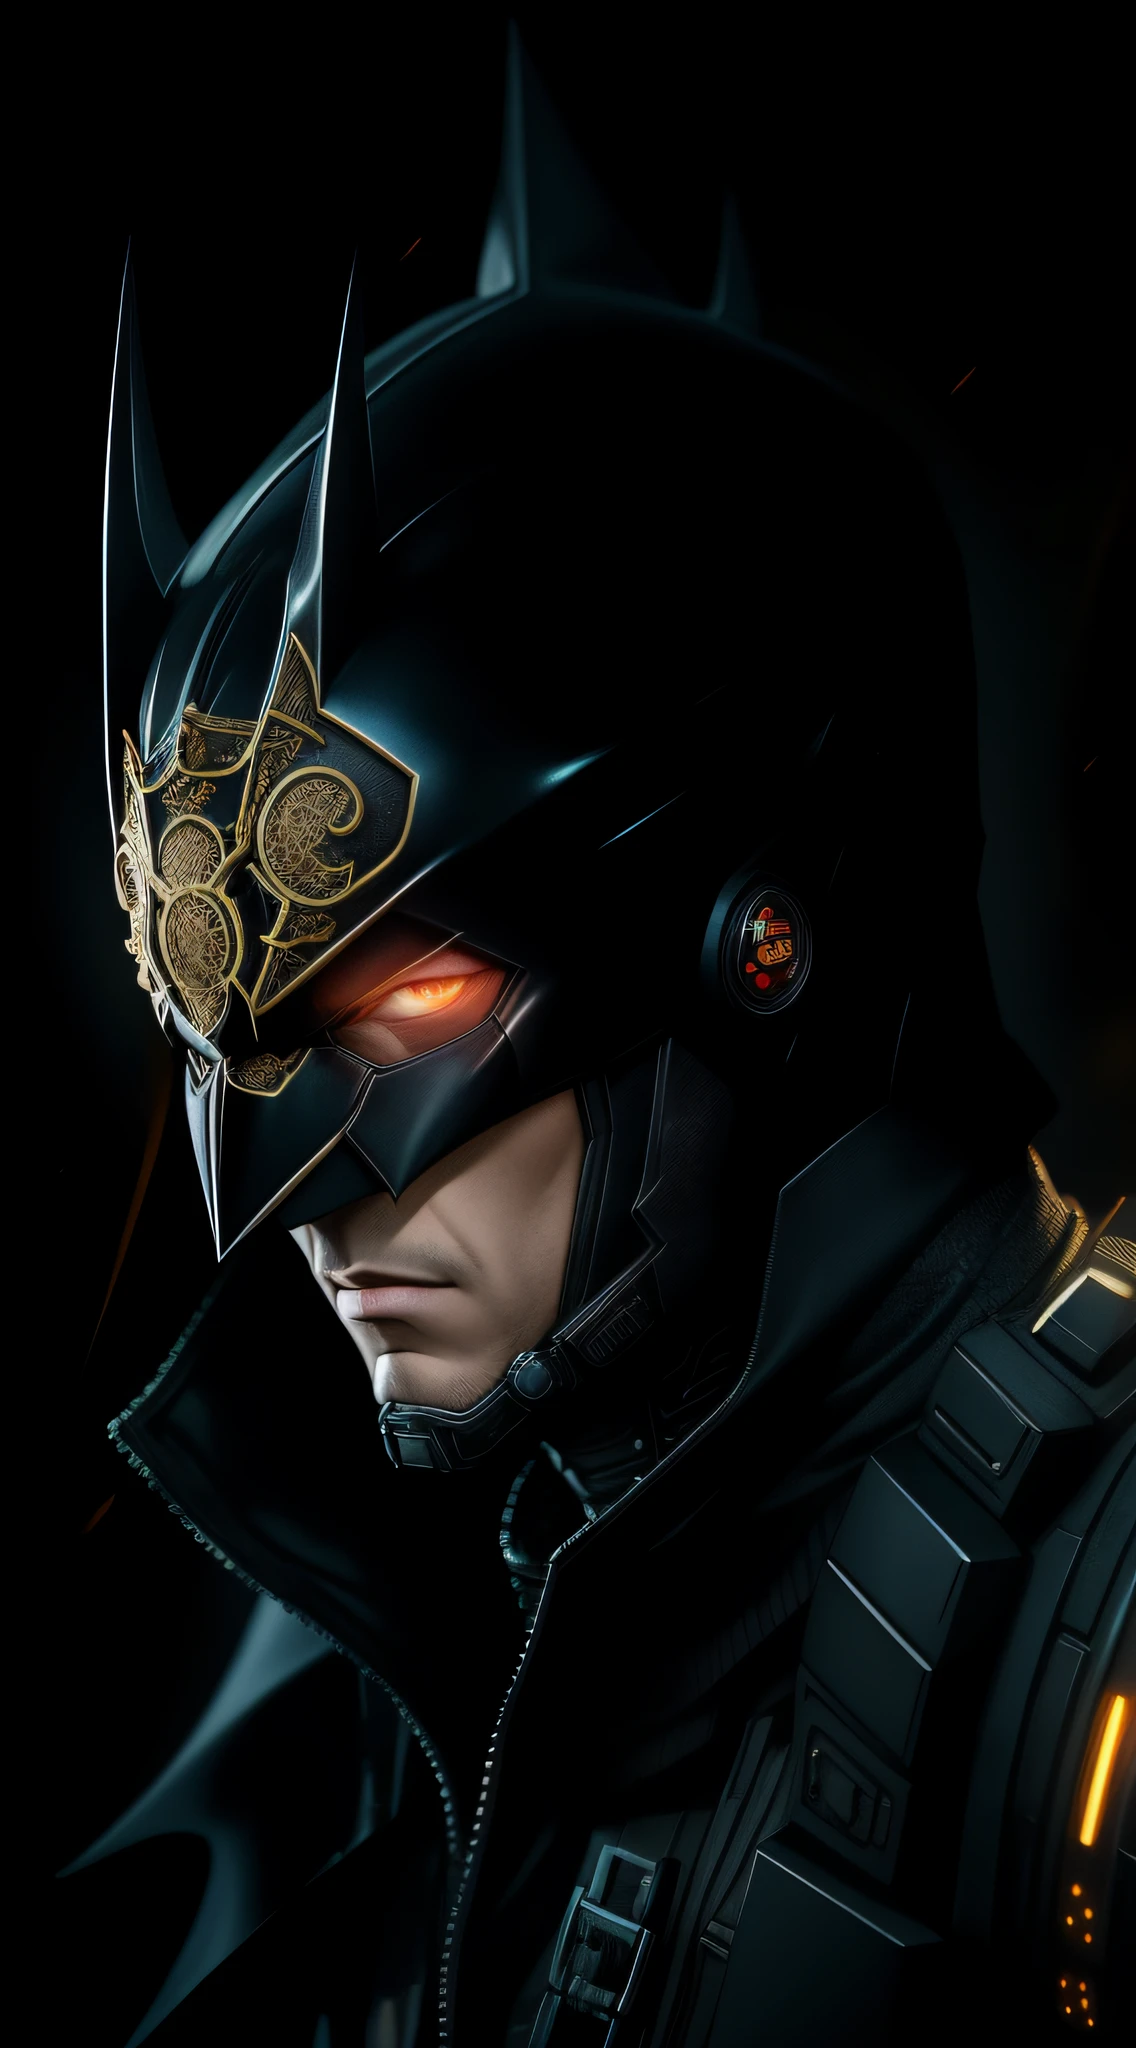 Representación de octanaje de Batman cyberpunk por Tsutomu nihei, Seda cromada con intrincada tela adornada de filigrana dorada, fundo misterioso escuro --v 4 --q 2